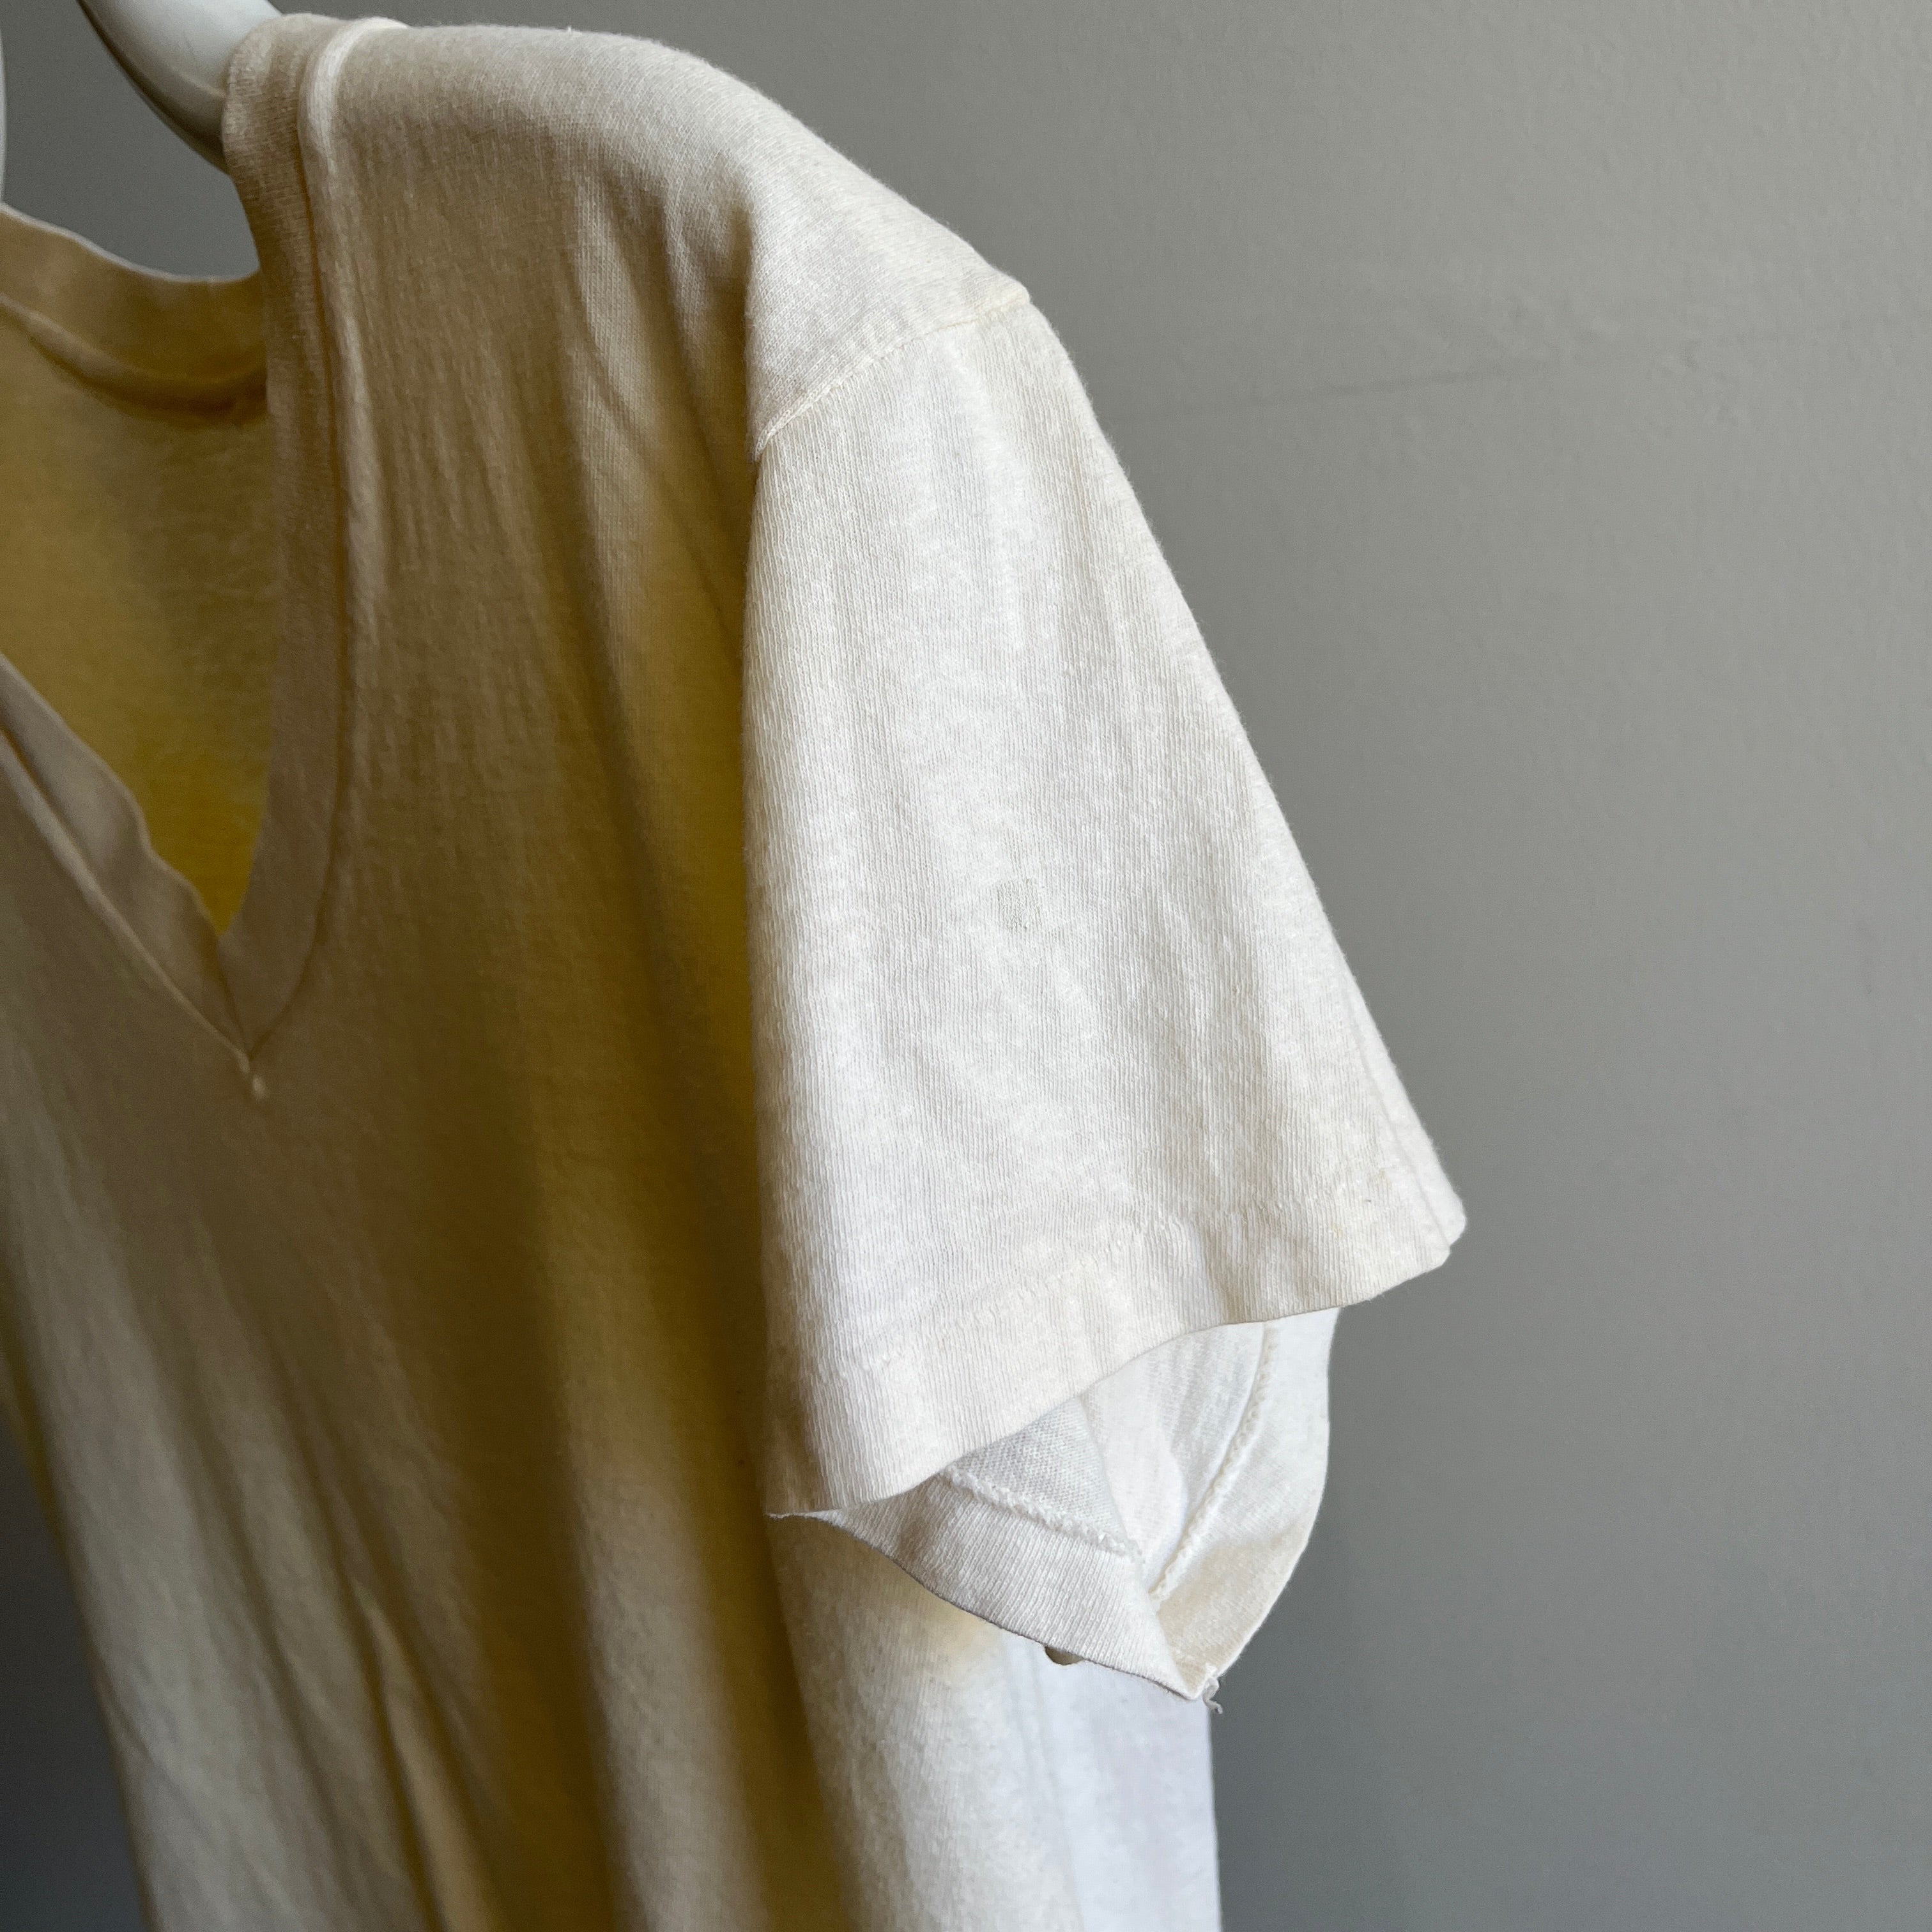 T-shirt à col en V en coton écru vieilli des années 1980 - WOW